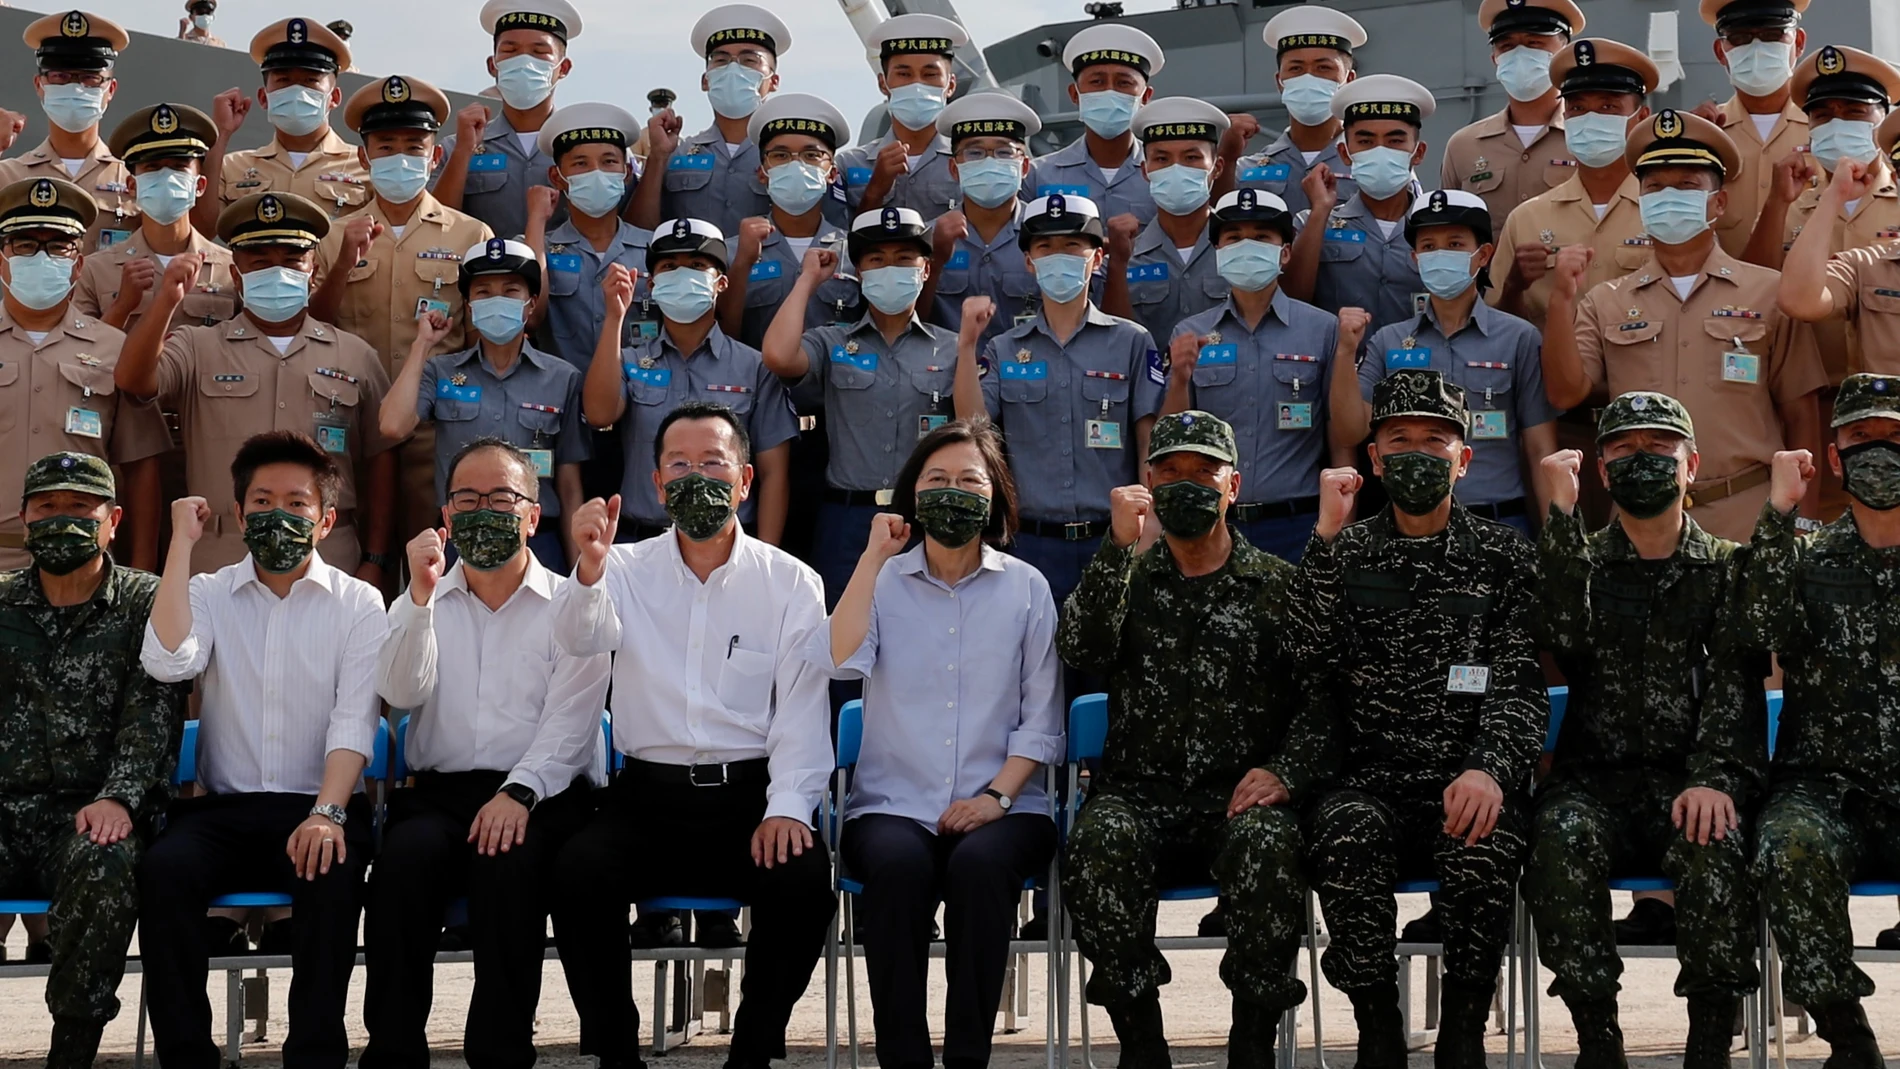 La presidenta taiwanesa Tsai Ing-wen posa hoy junto con la Armada durante su vistia a la base de Penghu, Taiwán